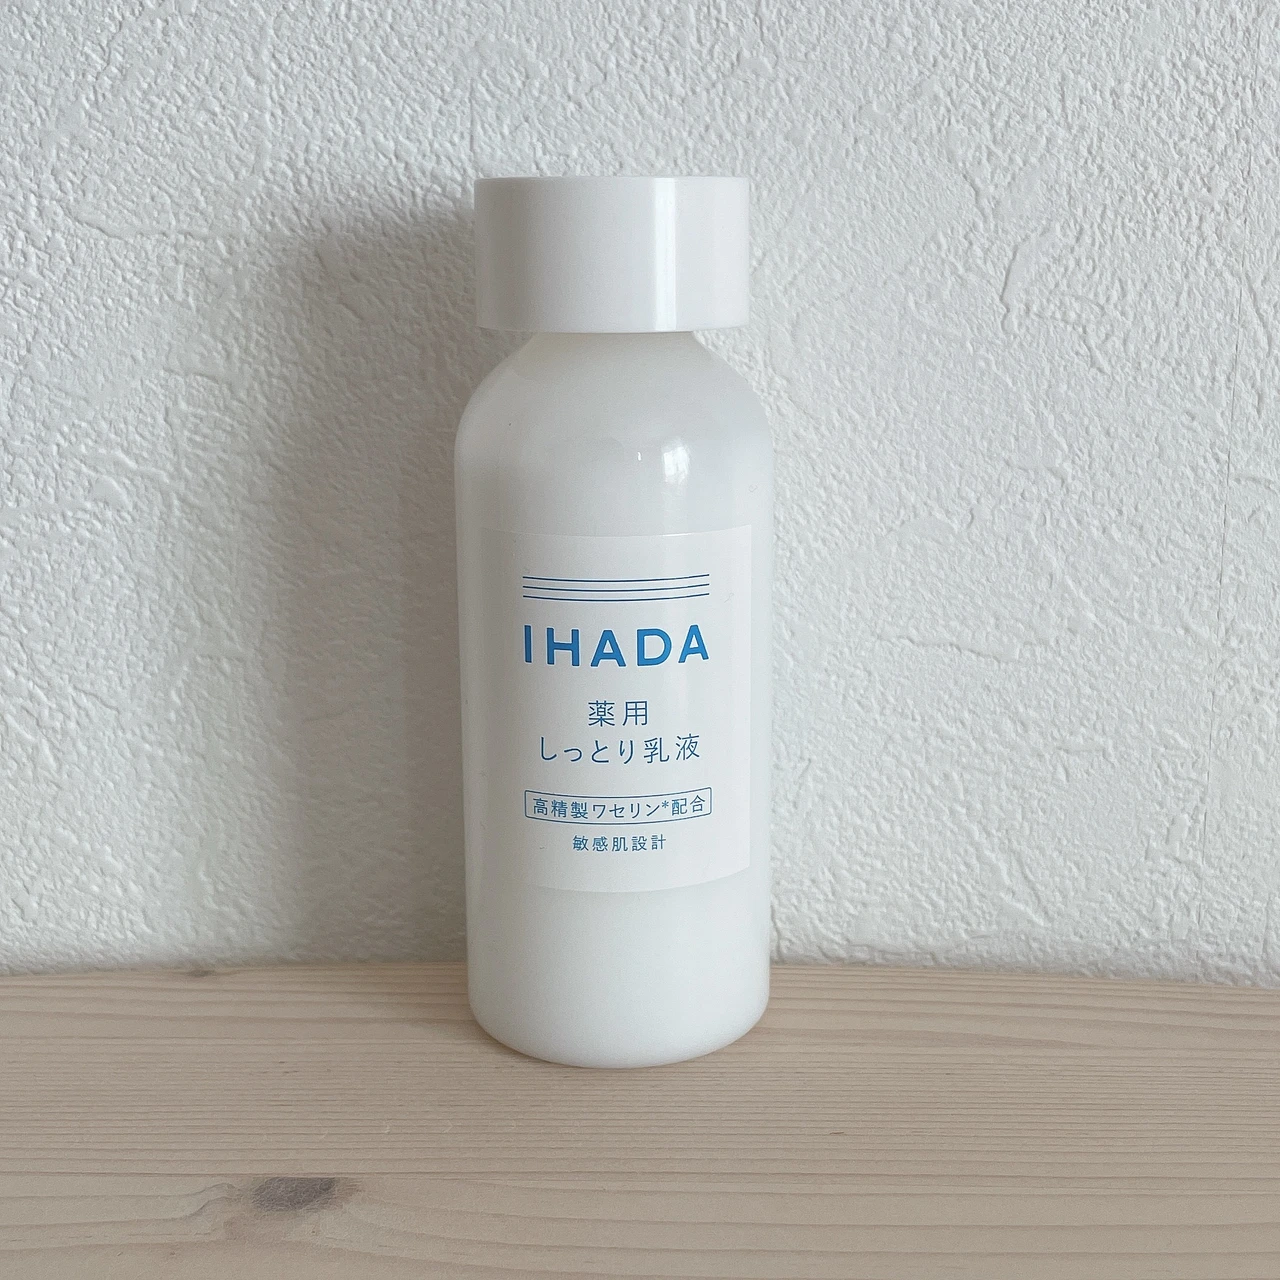 【ゆらぎケアに】IHADA(イハダ)の高精製ワセリン配合スキンケアで季節の変わり目の肌荒れ対策！効果的な使い方もご紹介します♡_4_1